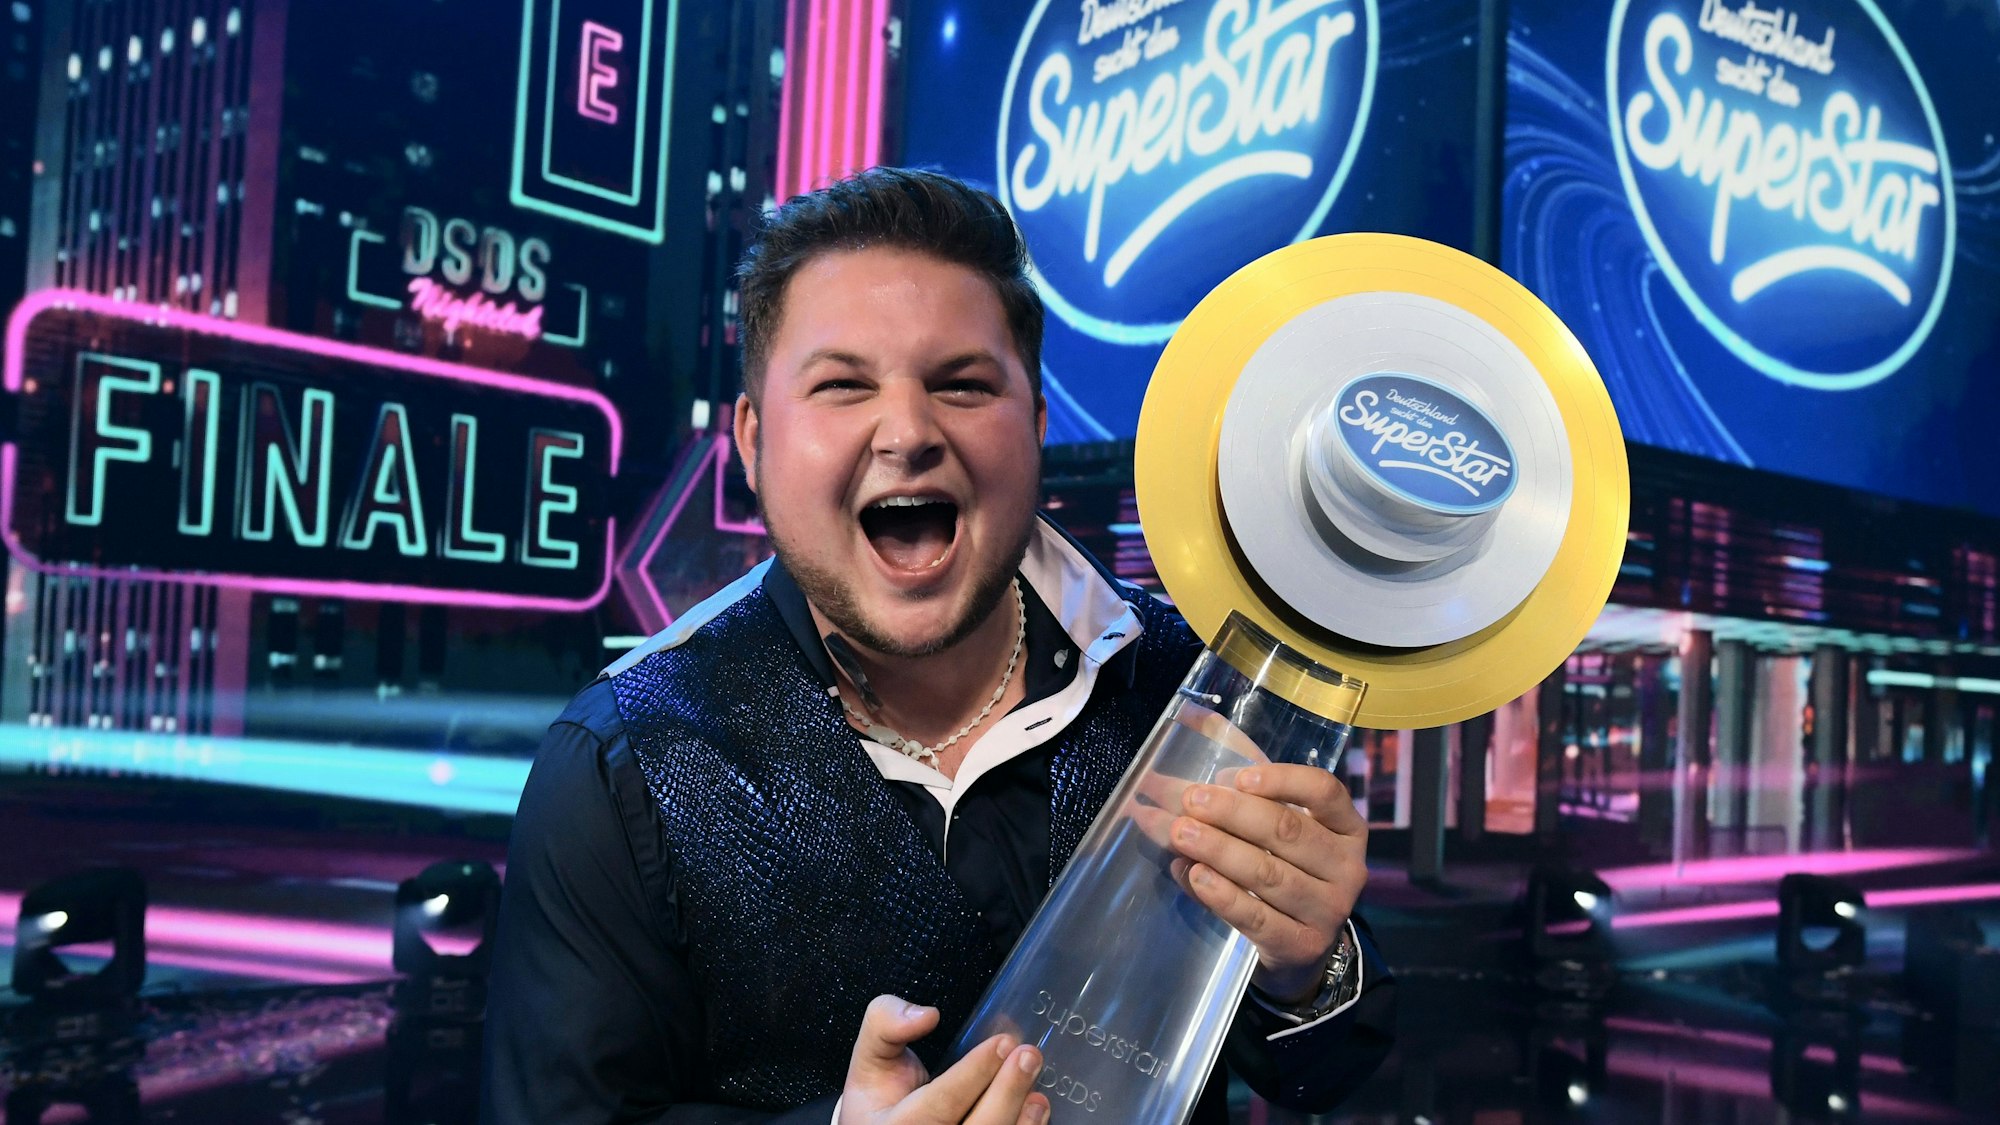 Sänger Harry Laffontien, Gewinner der RTL-Castingshow„Deutschland sucht den Superstar“ (DSDS), Staffel 19, präsentiert im Finale den Siegerpokal.